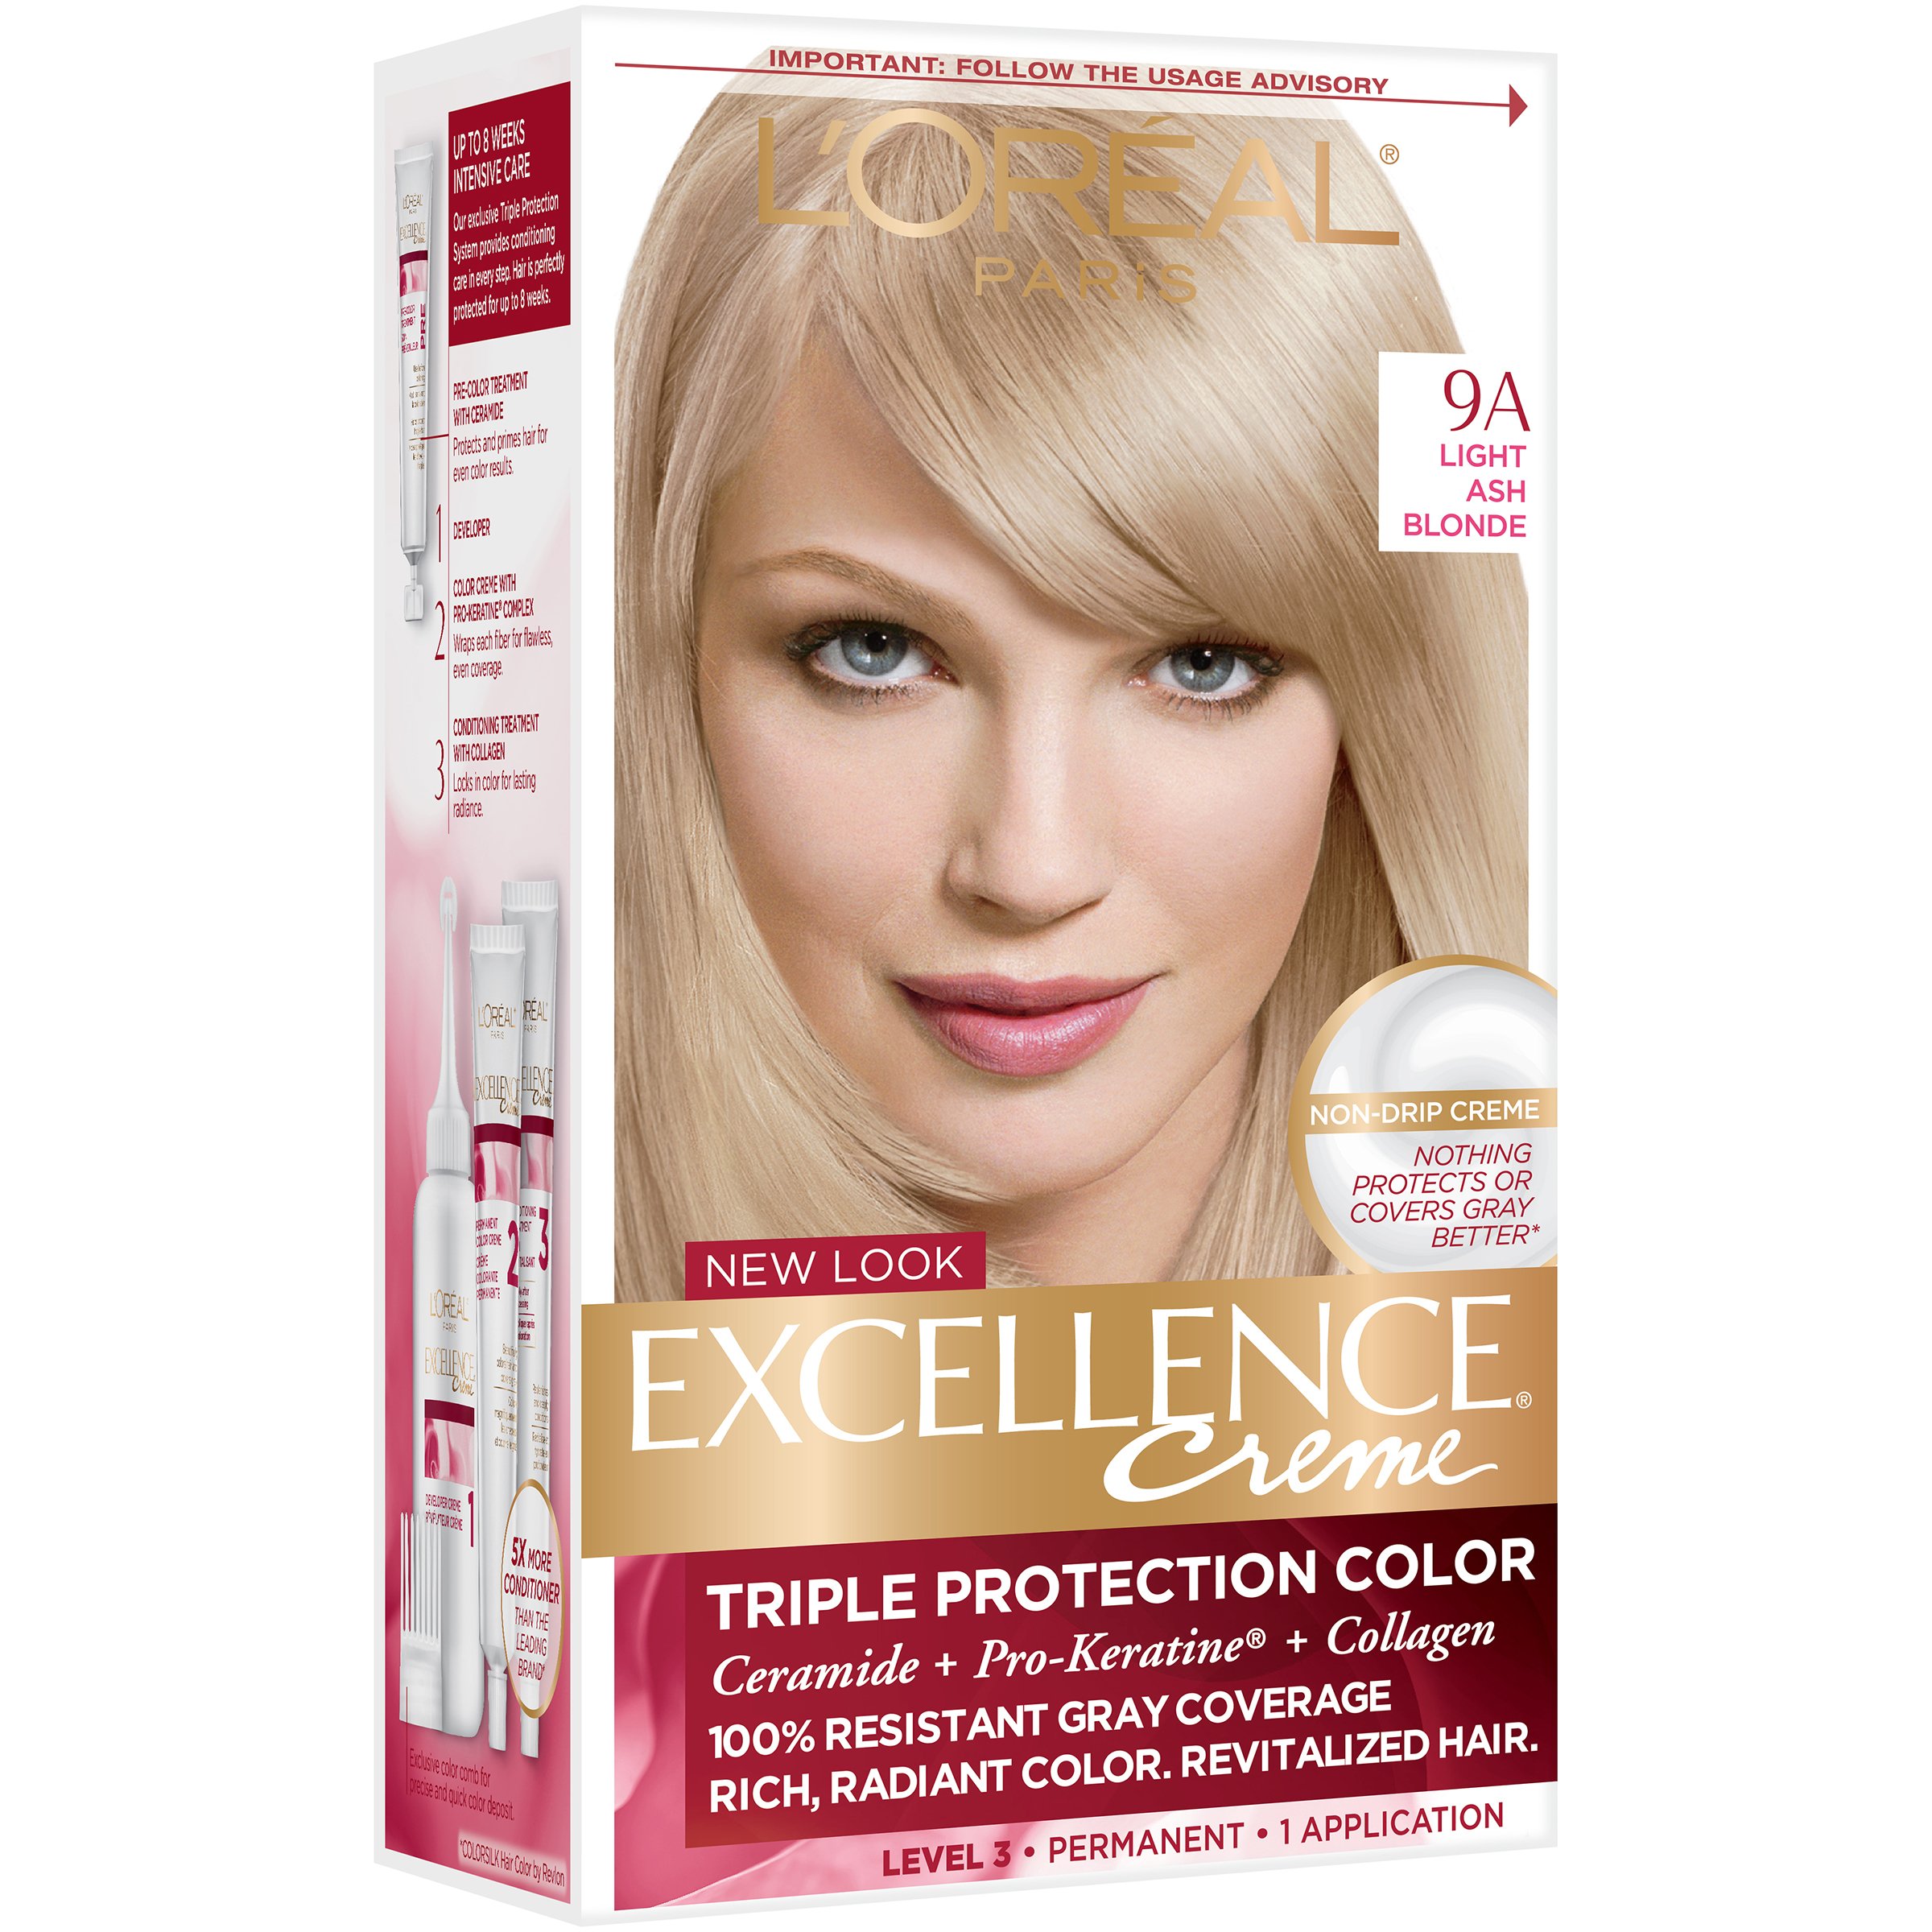 L'Oréal Paris Excellence Créme Permanent Hair Color, 9A Light Ash Blonde -  Shop Hair Color at H-E-B